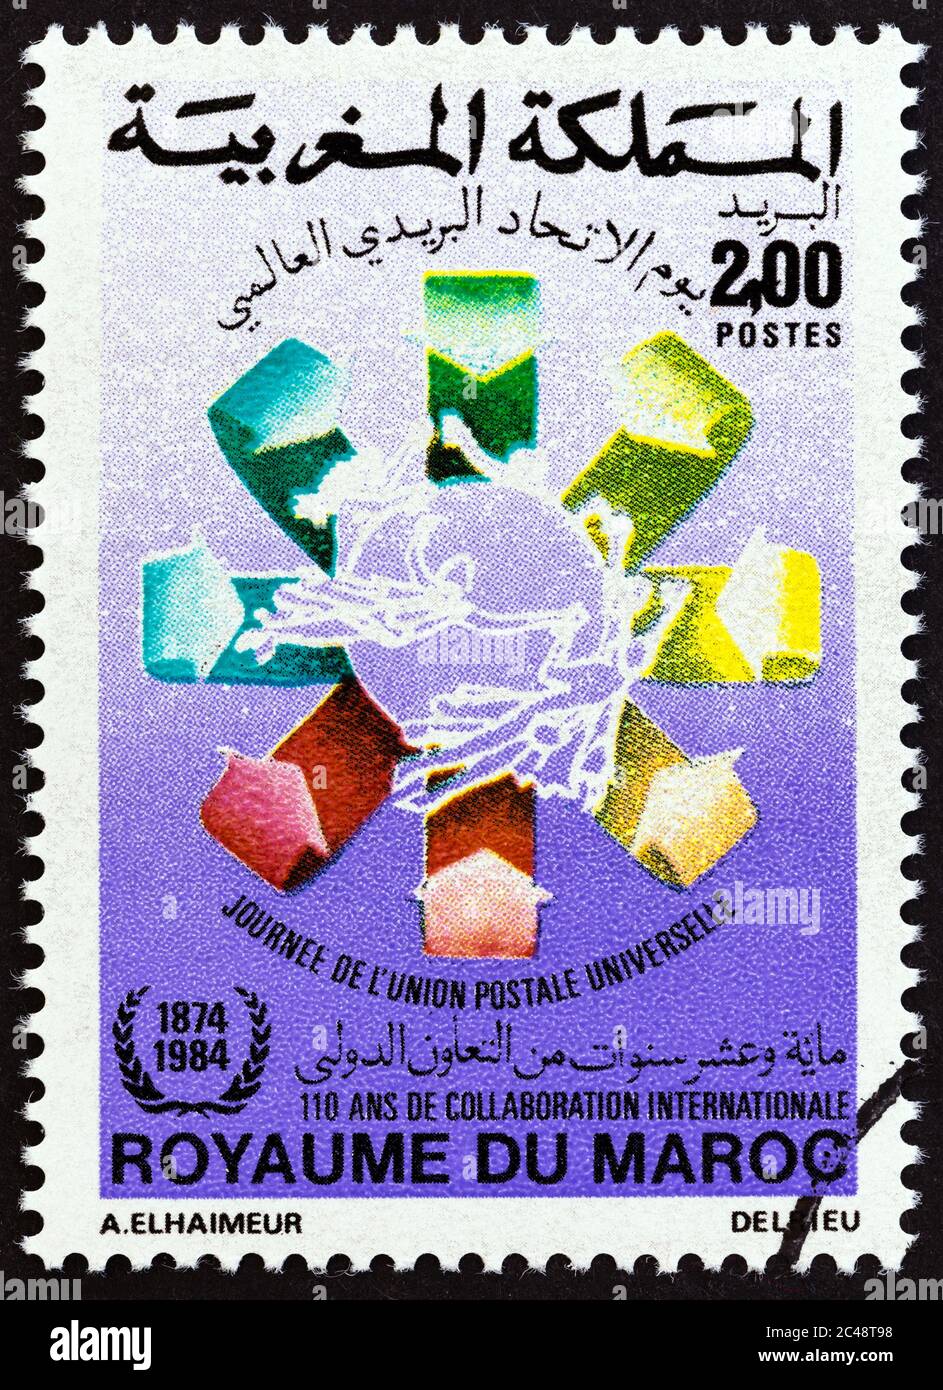 MAROC - VERS 1984 : un timbre imprimé au Maroc émis pour la Journée universelle de l'Union postale montre l'emblème, vers 1984. Banque D'Images